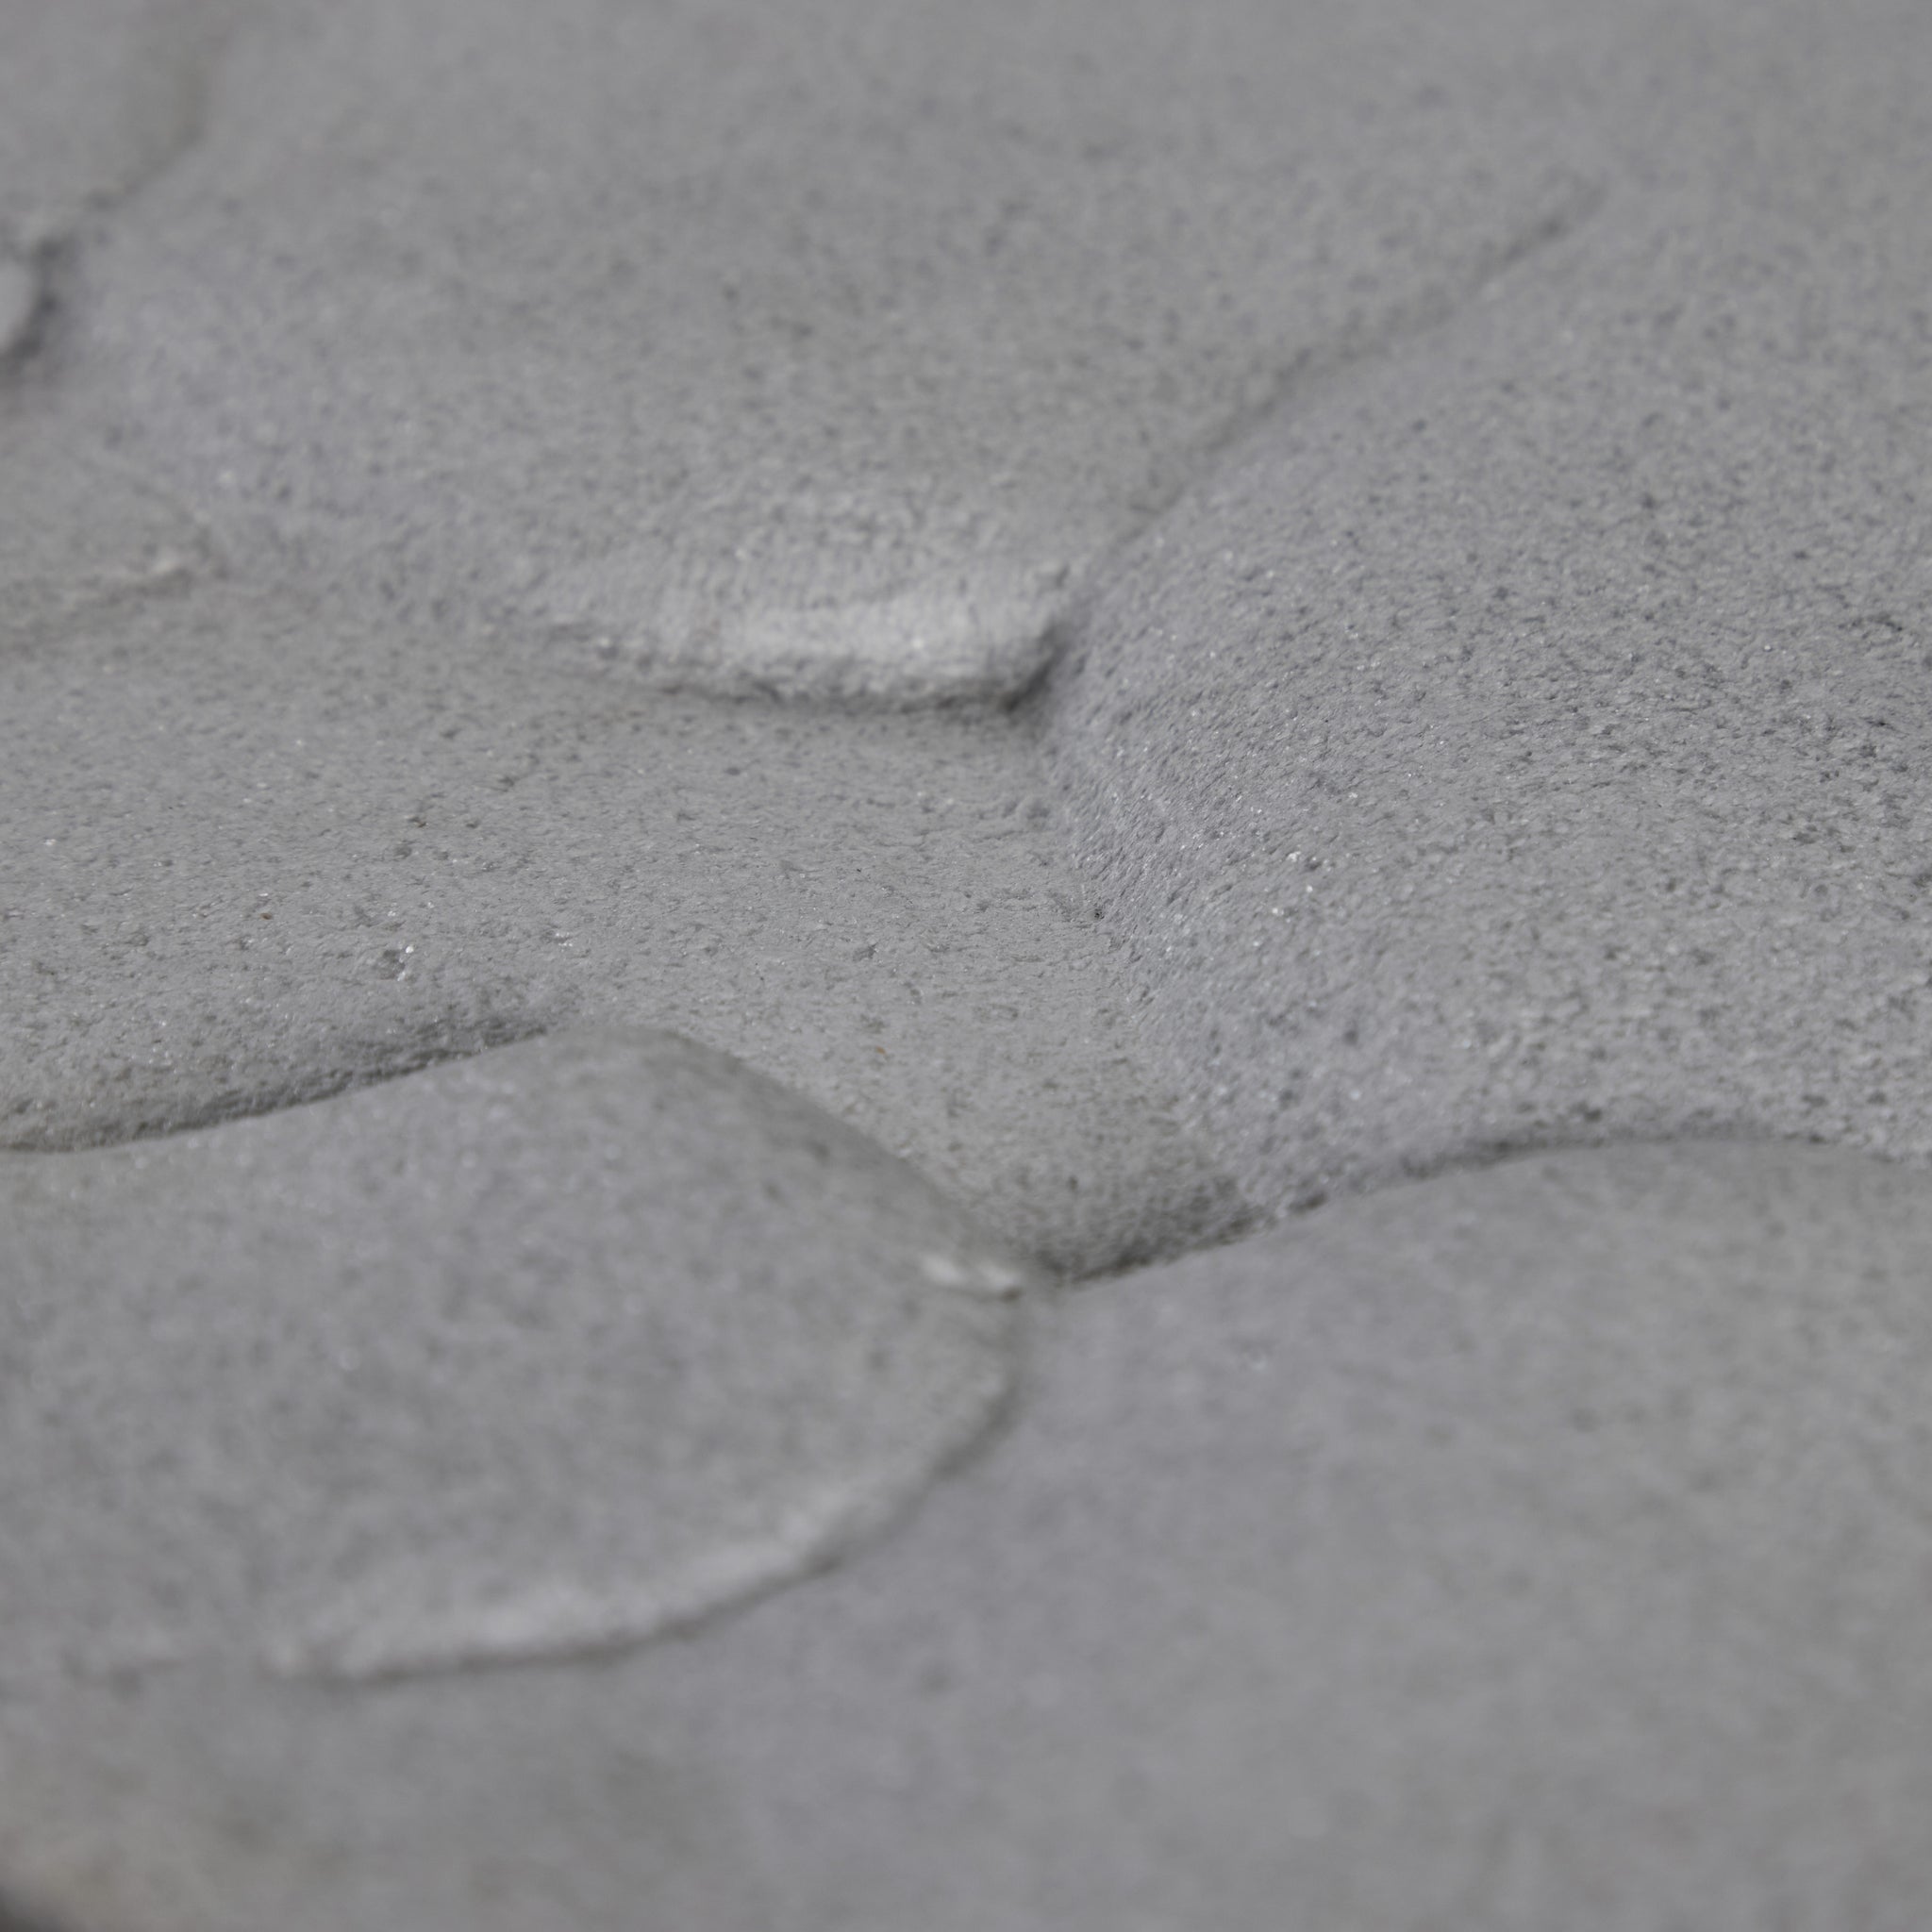 Textural White Stone Slab